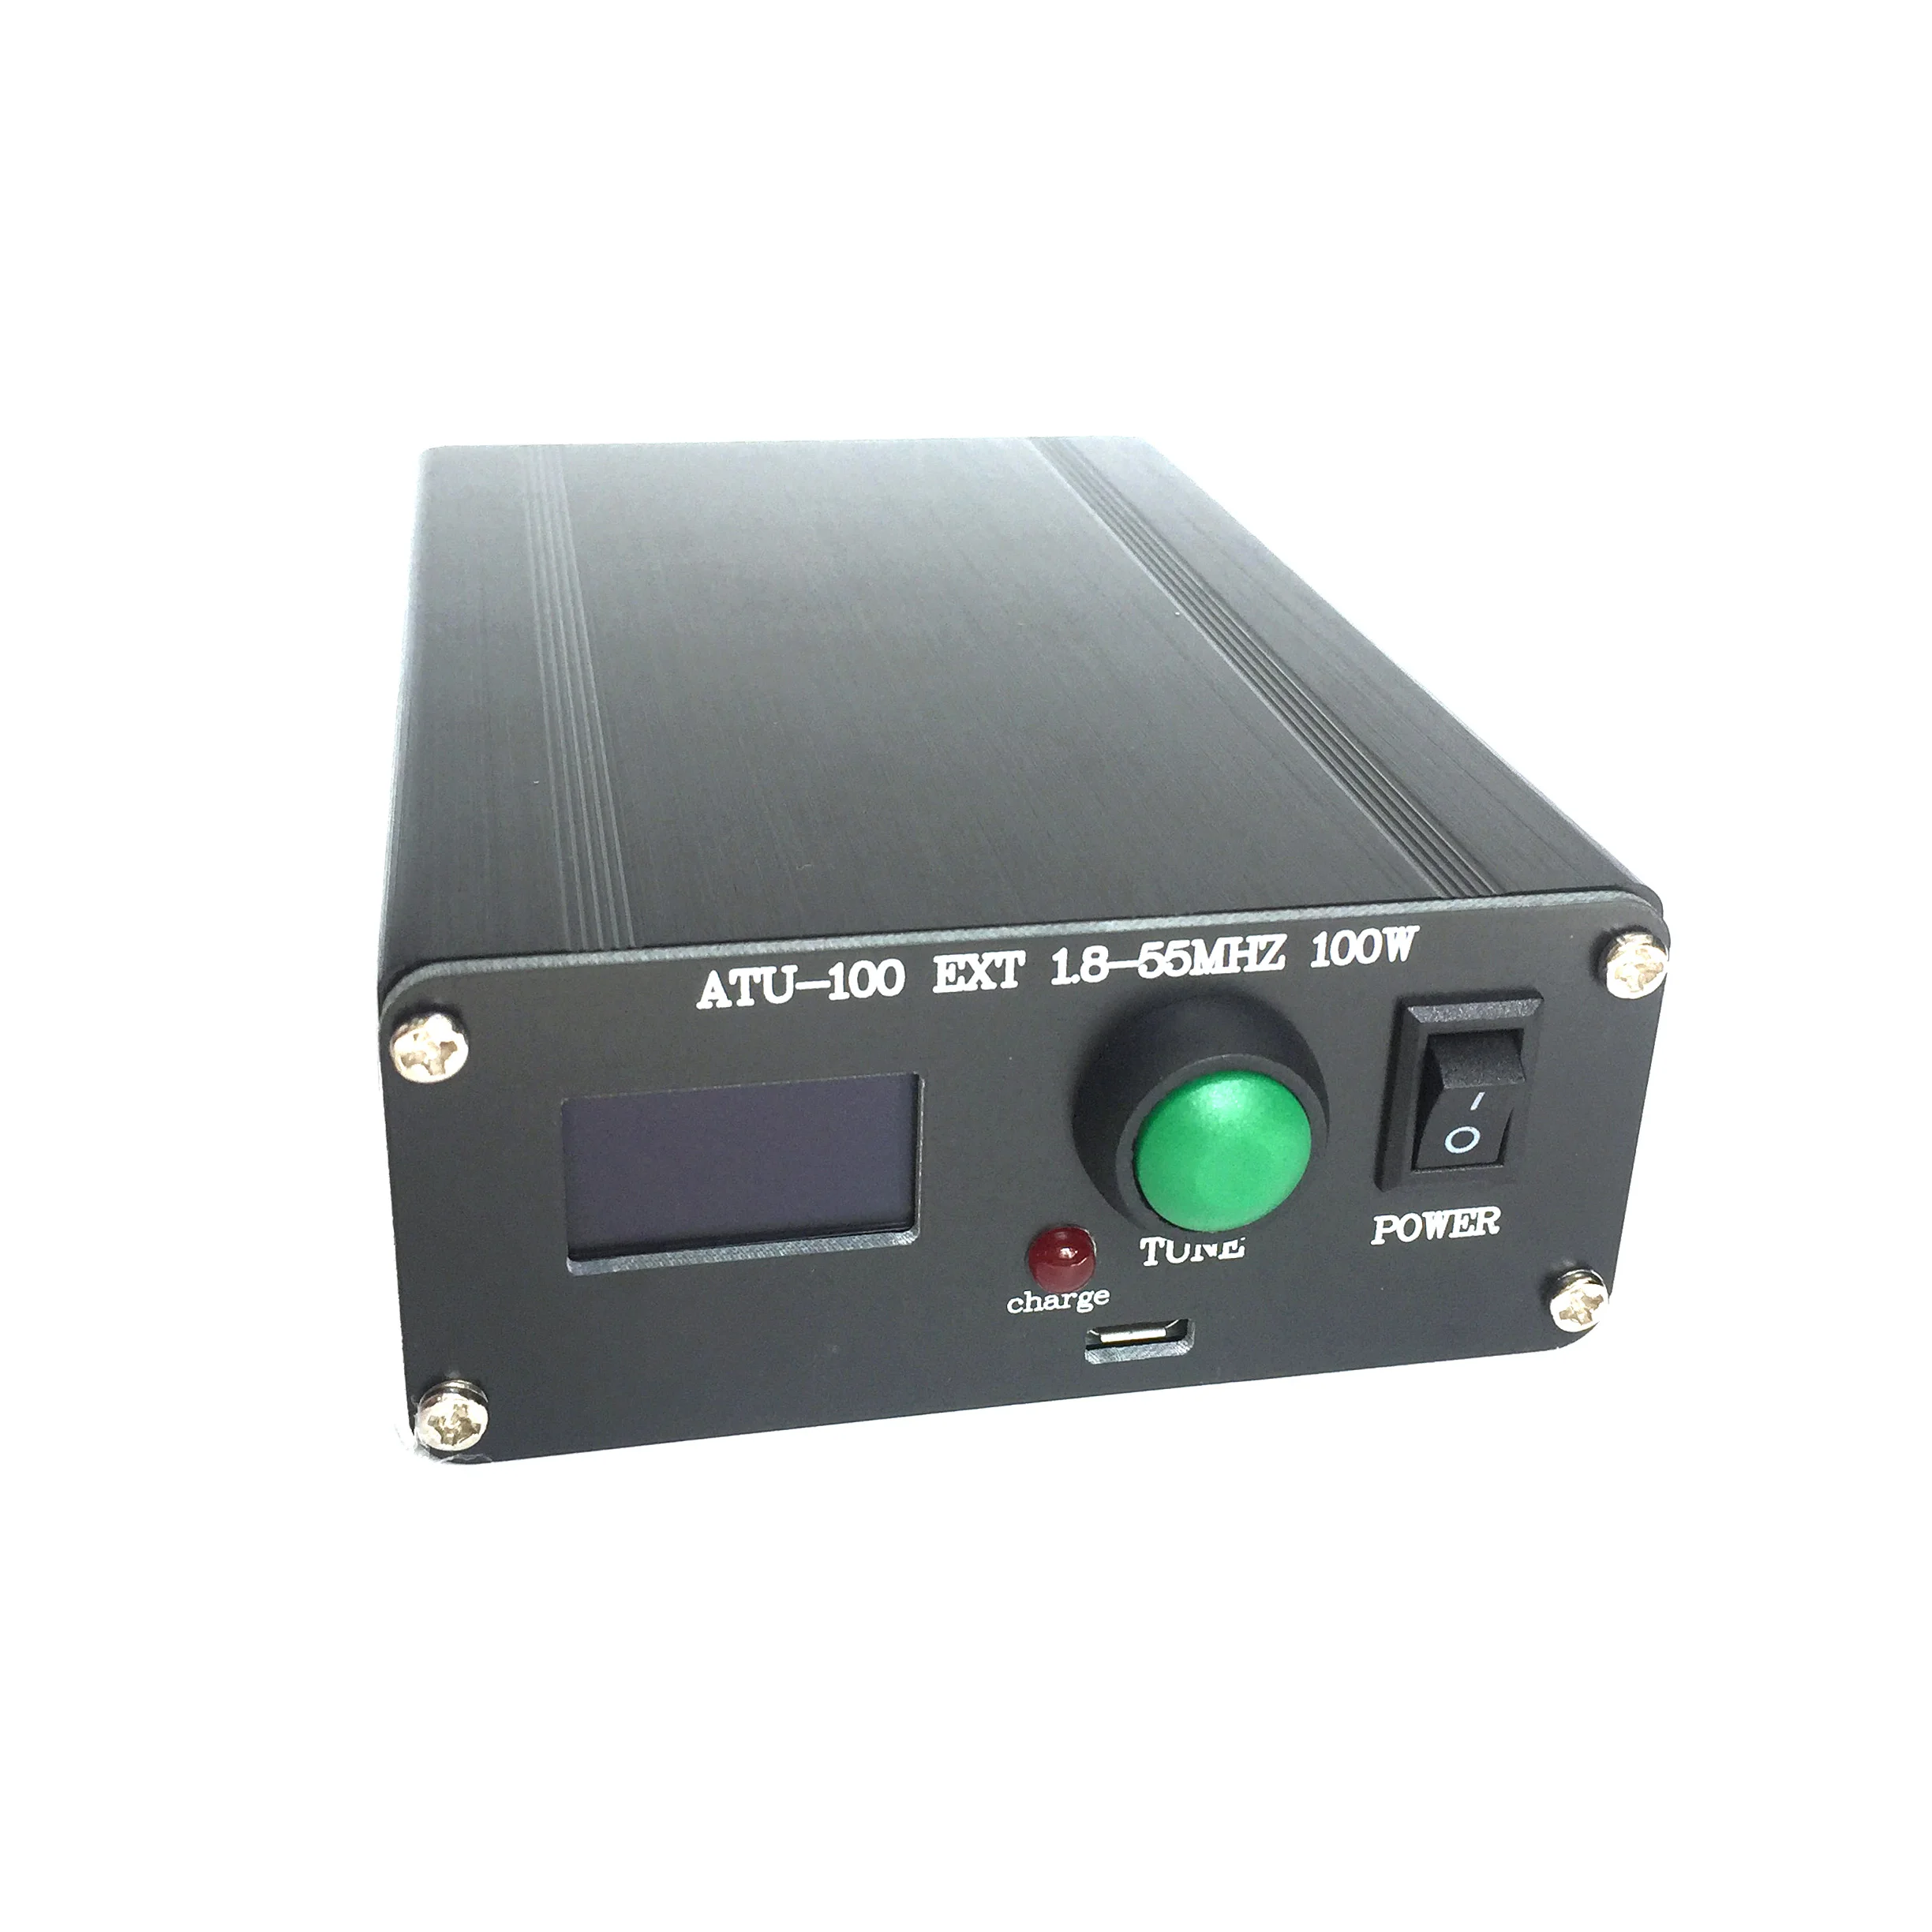 Готовый мини-автоматический антенный тюнер ATU-100 ATU-100 1,8-50 МГц от N7DDC 7x7 + Mini 0.96 OLED + Металлический корпус + батарея 1350 МА0